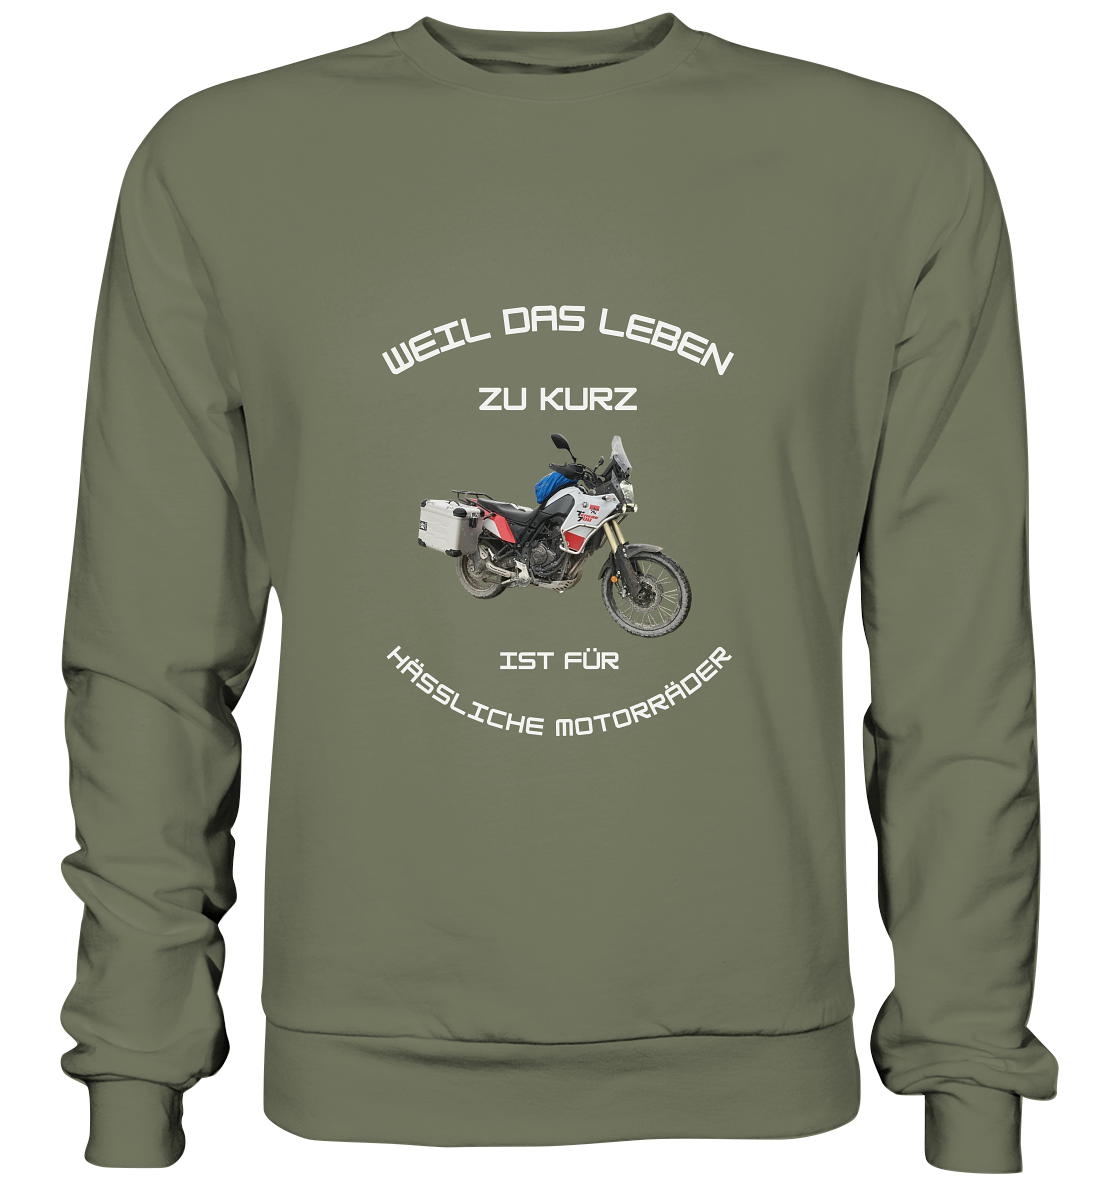 "Weil das Leben zu kurz ist für hässliche Motorräder" _ für Tim | individuelles Sweatshirt mit Foto und Motorrad-Spruch in hellem Design